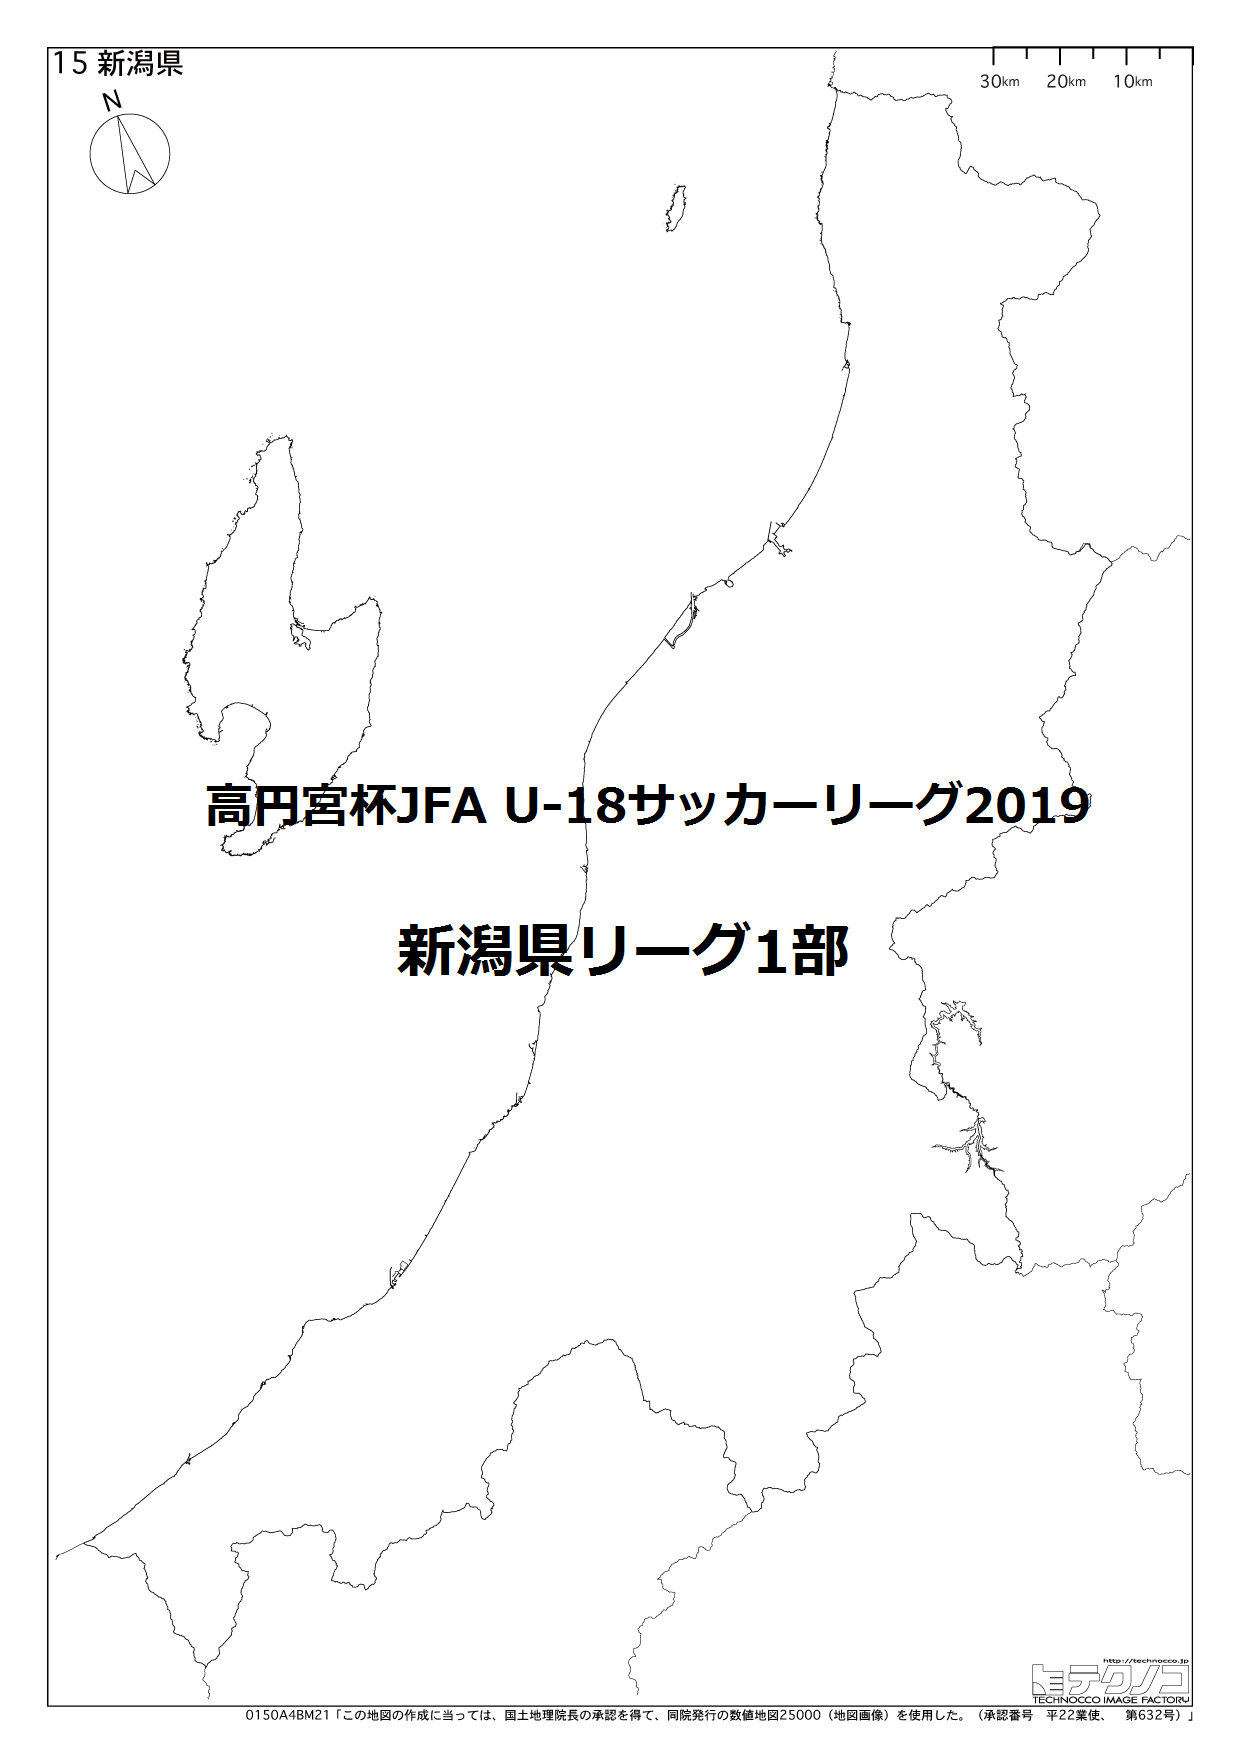 【2種】高円宮杯JFA U-18サッカーリーグ2019 新潟県